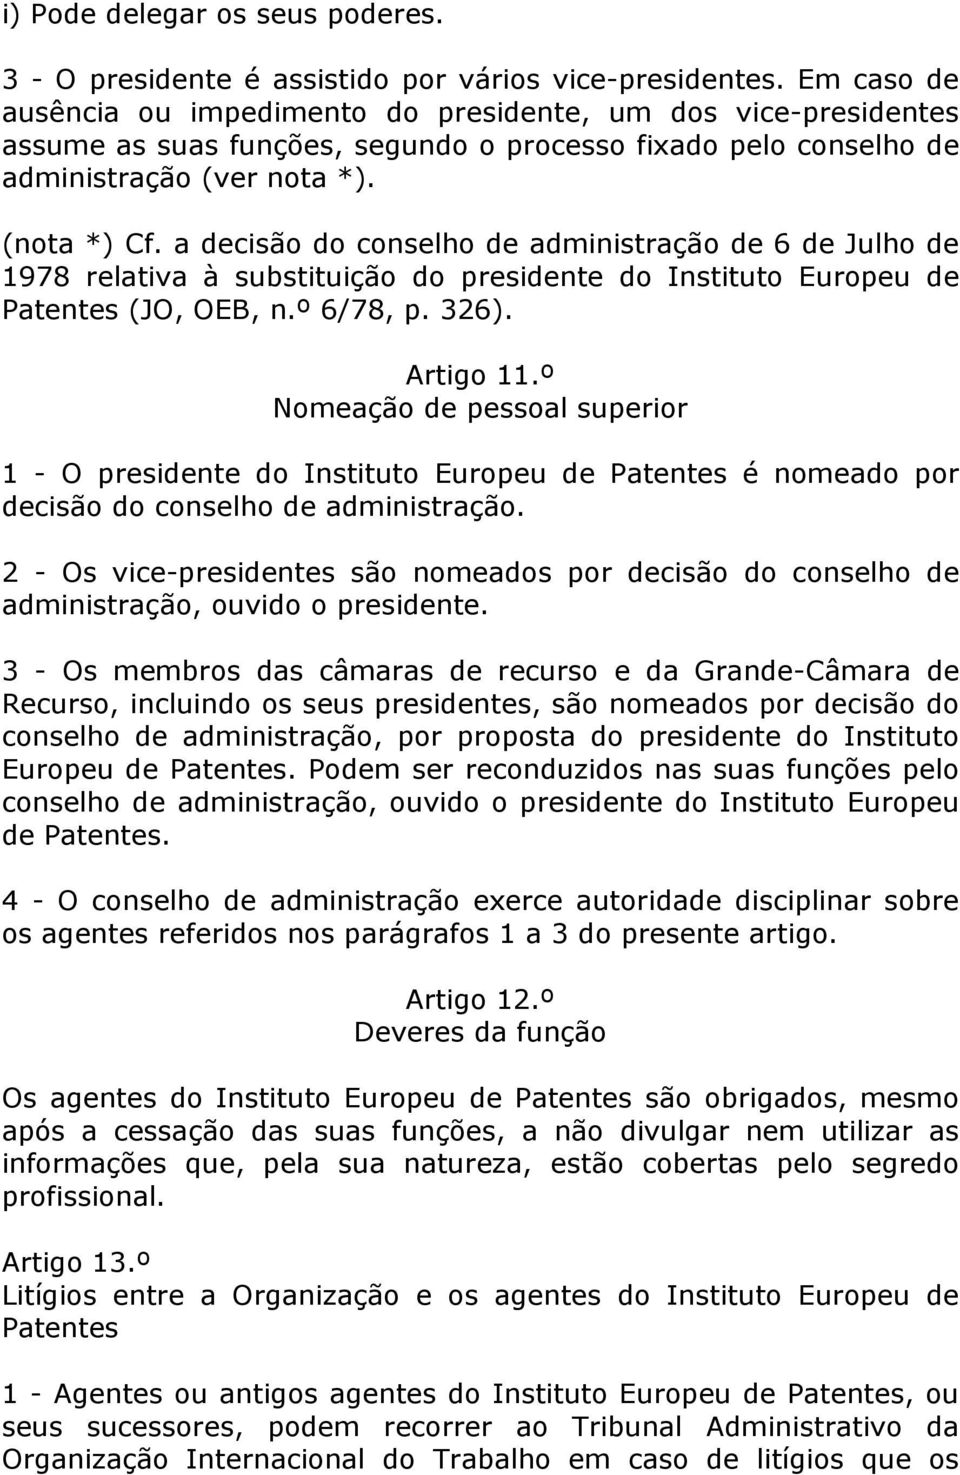 a decisão do conselho de administração de 6 de Julho de 1978 relativa à substituição do presidente do Instituto Europeu de Patentes (JO, OEB, n.º 6/78, p. 326). Artigo 11.